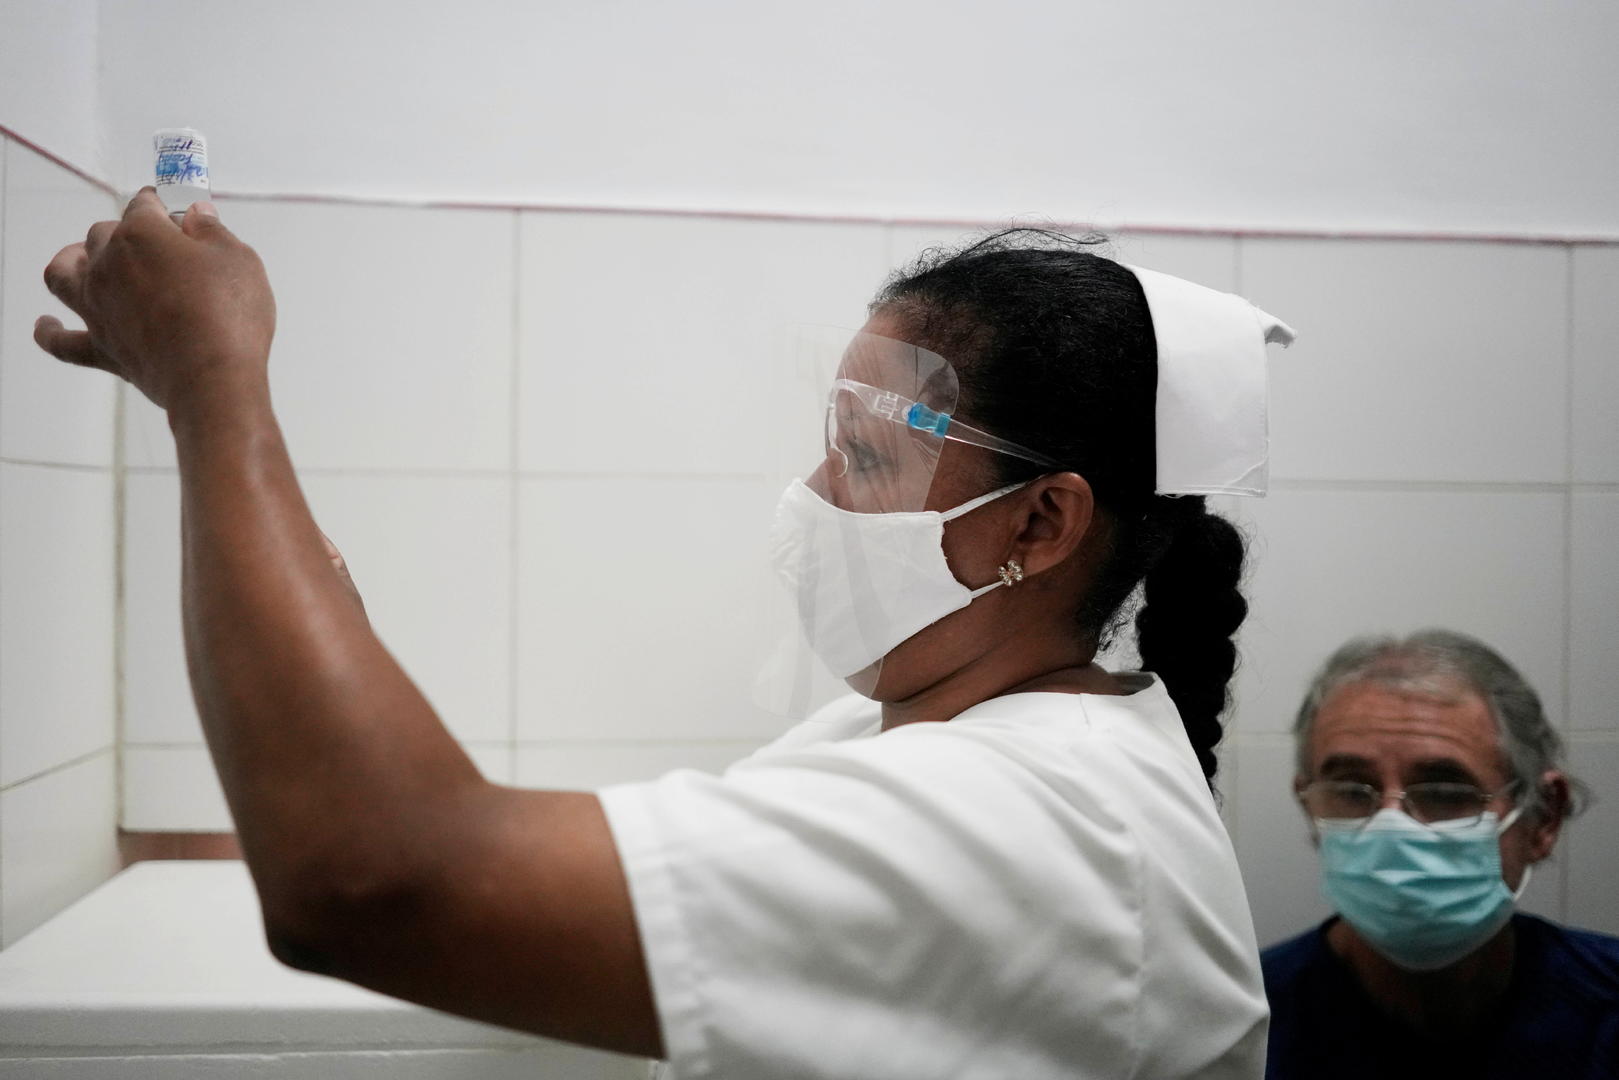 ↑古巴公民注射古巴自主研制的新冠疫苗“阿夫达拉”